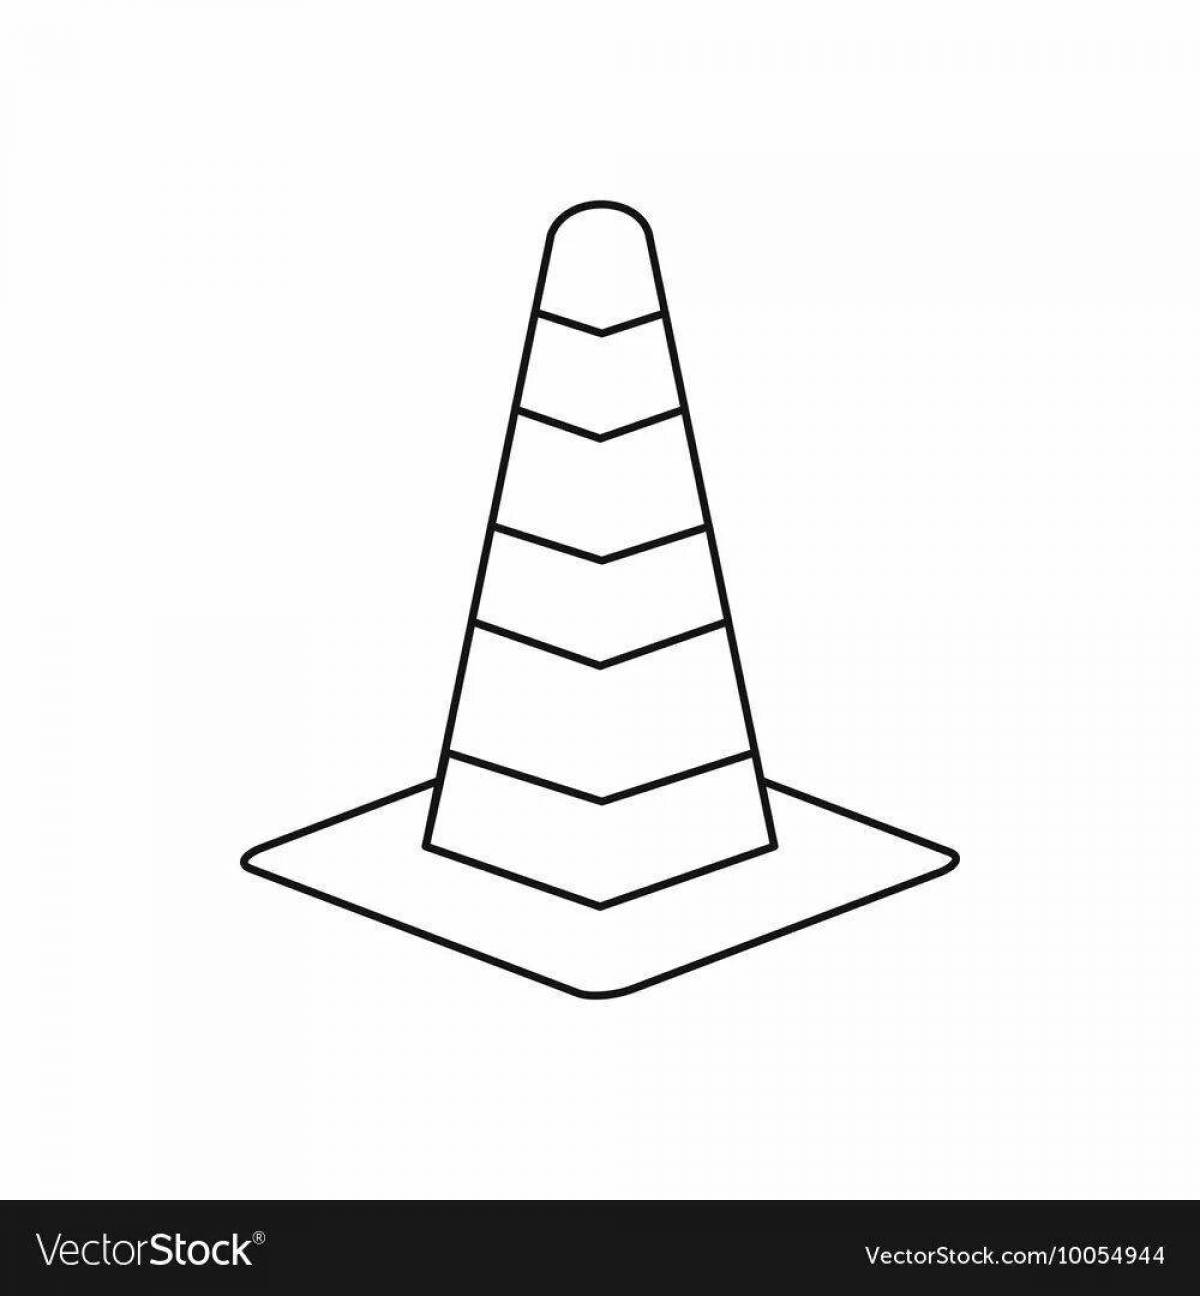 Traffic cones #5